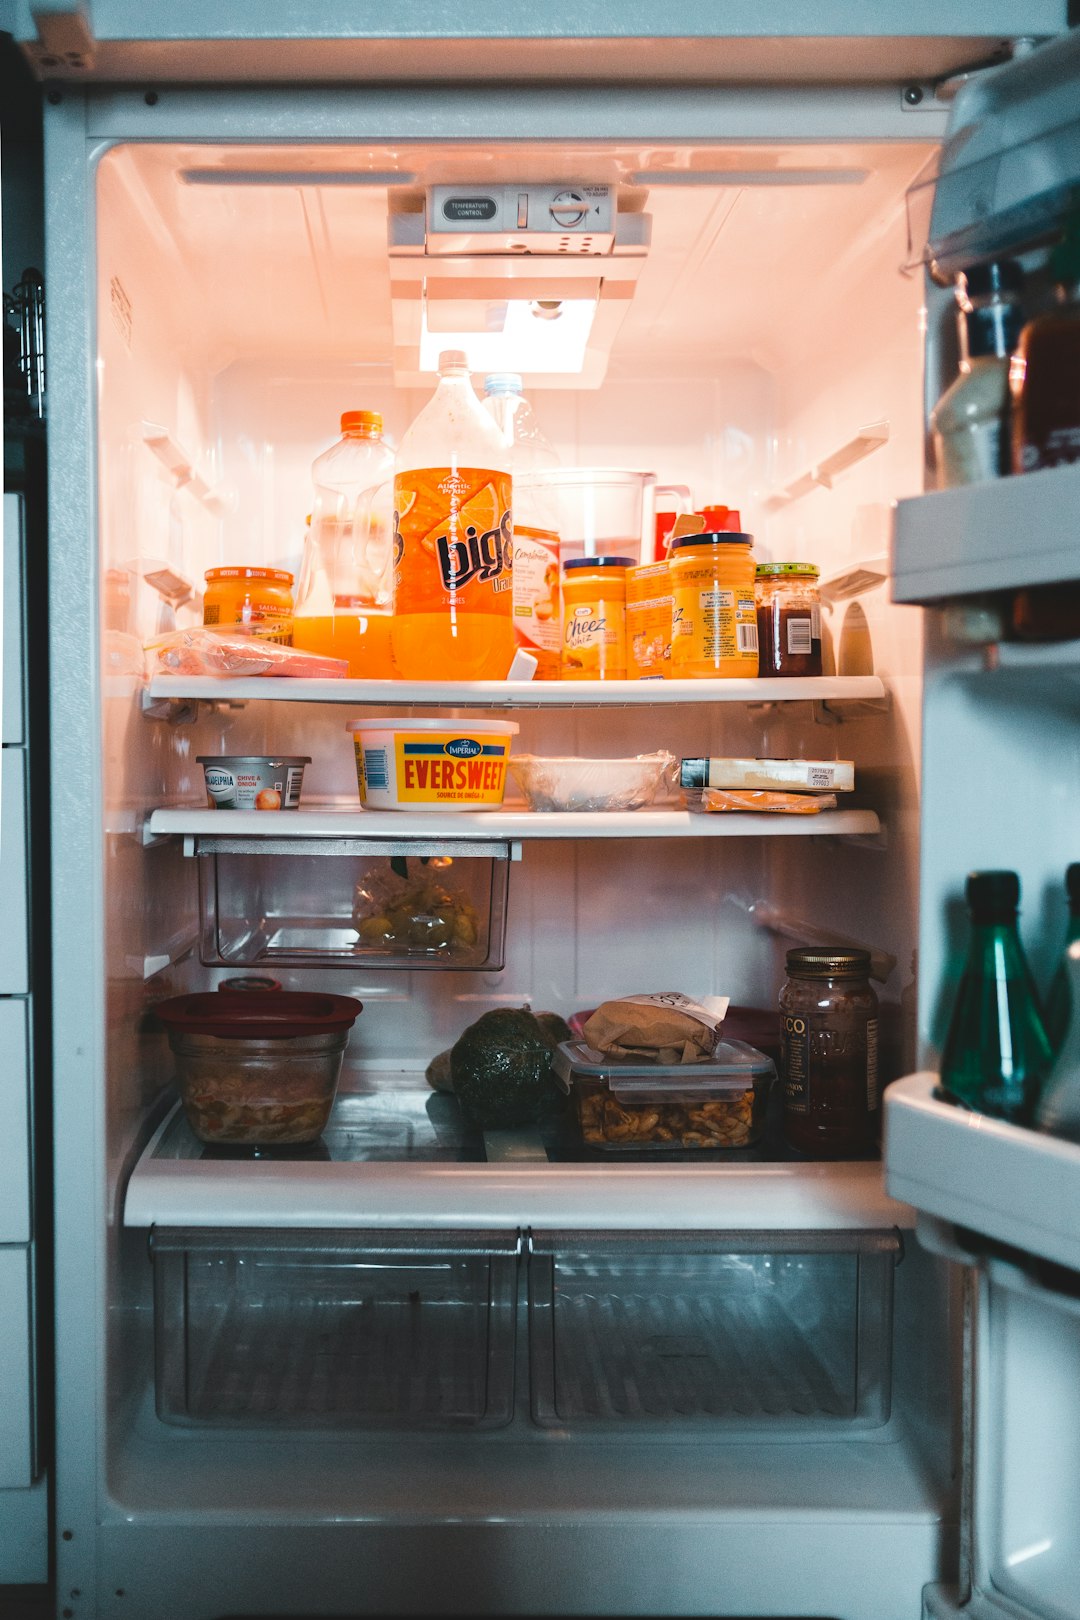 Cómo Elegir un Refrigerador Eficiente